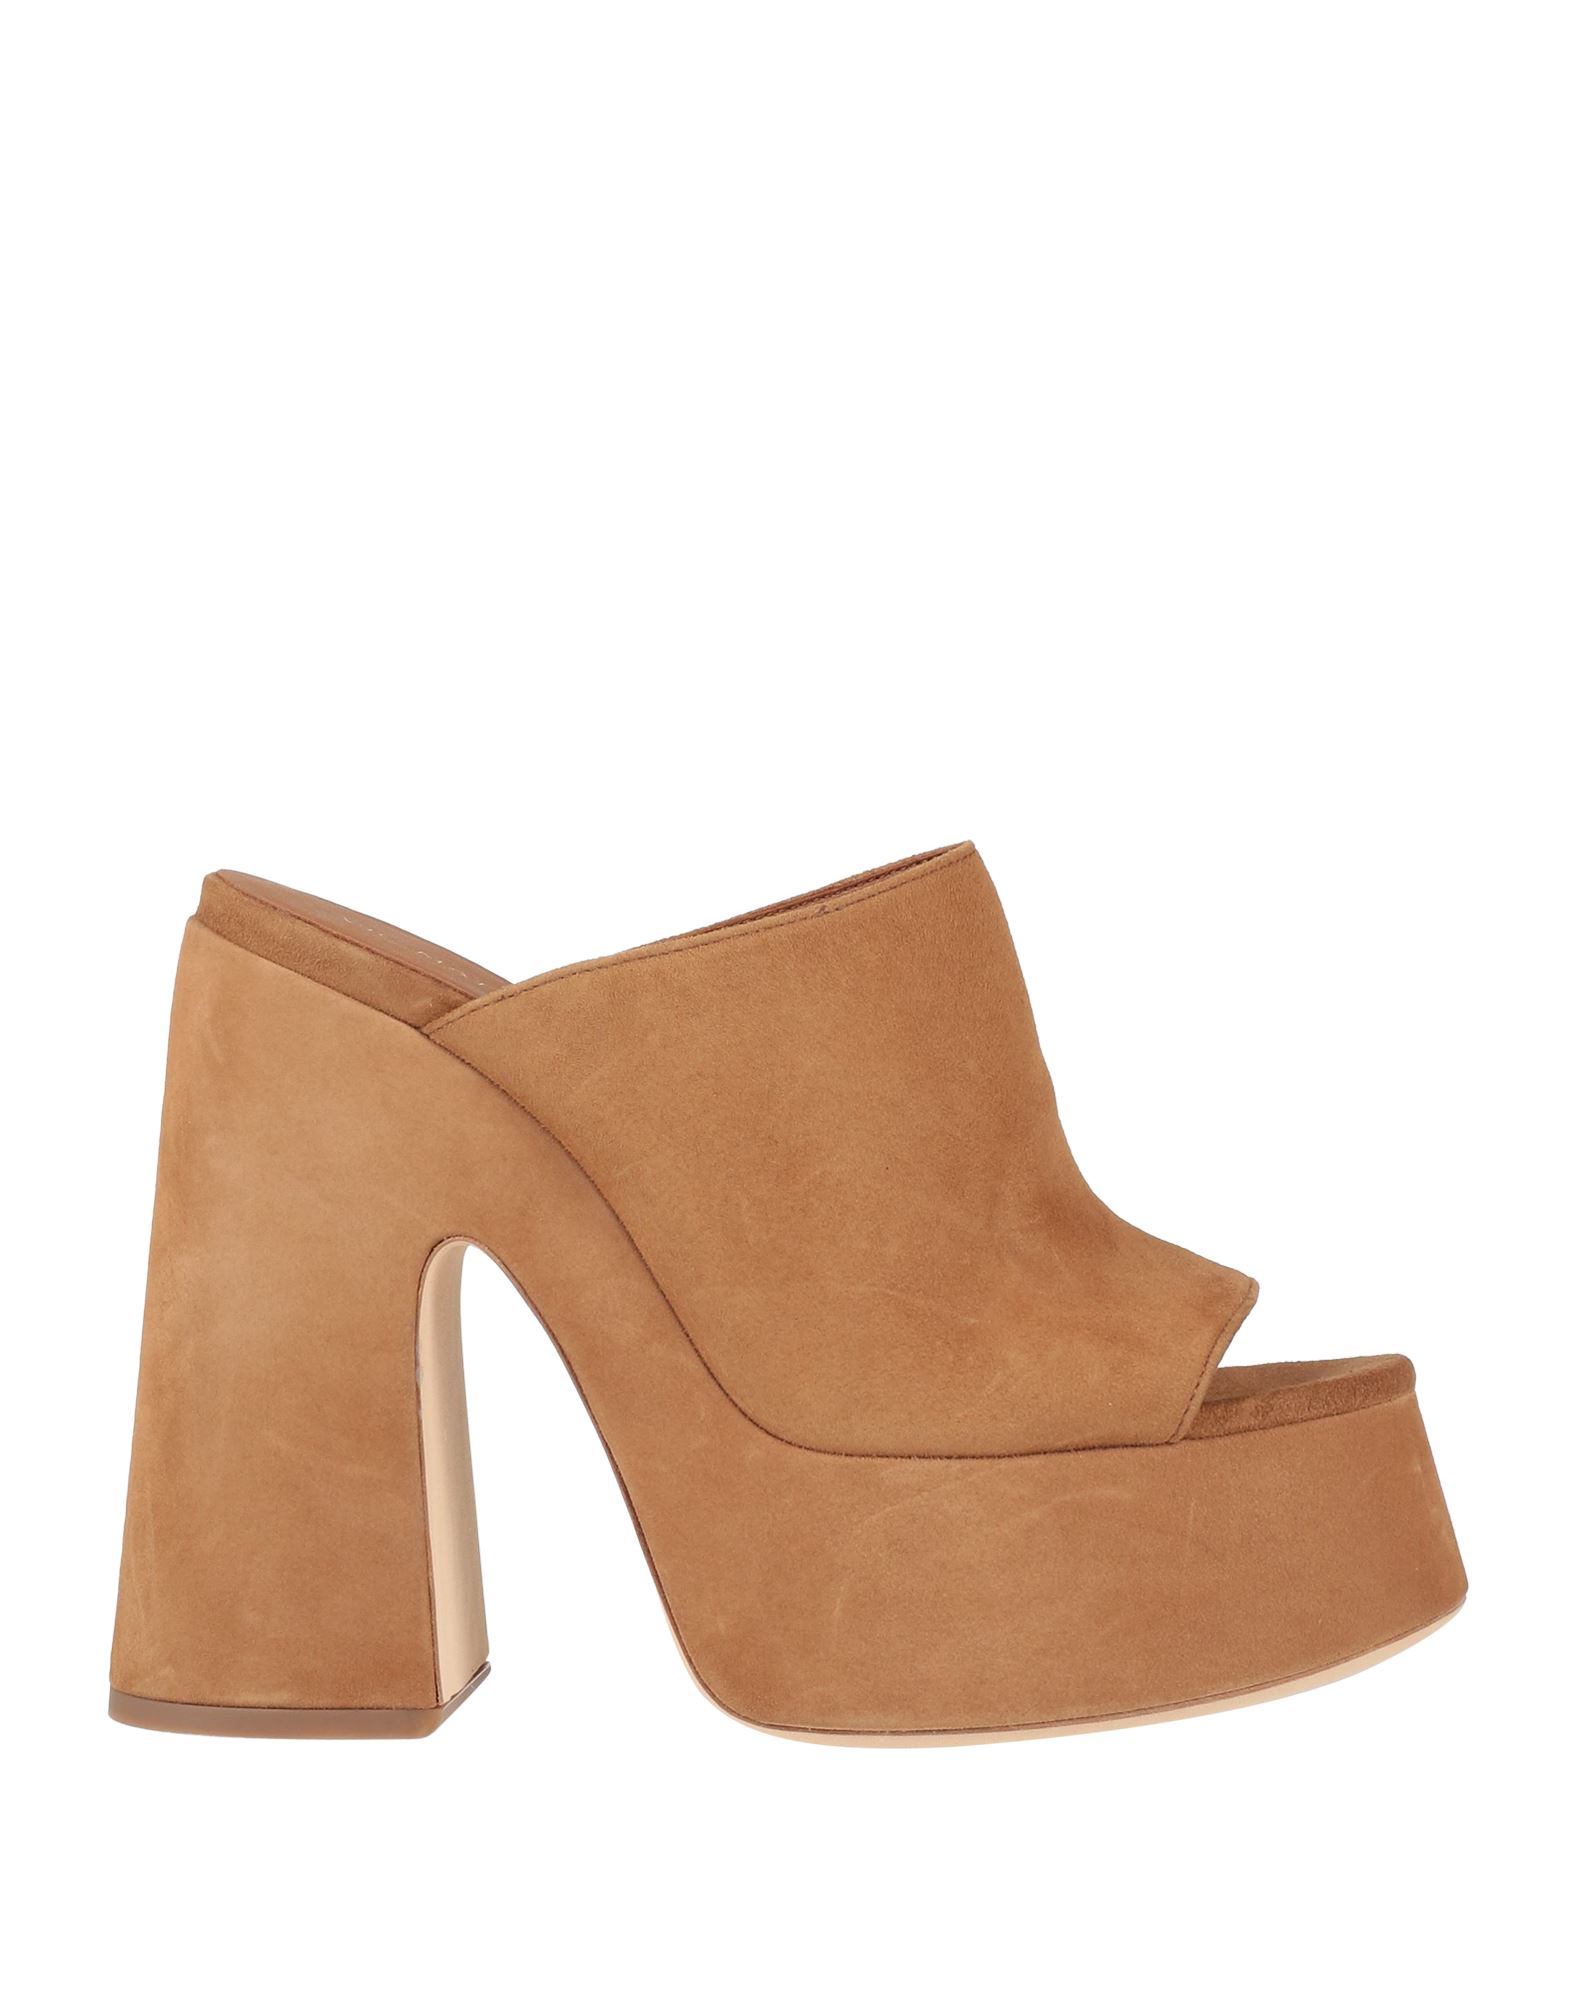 Shop Vic Matie Vic Matiē Woman Sandals Camel Size 8 Soft Leather In Beige